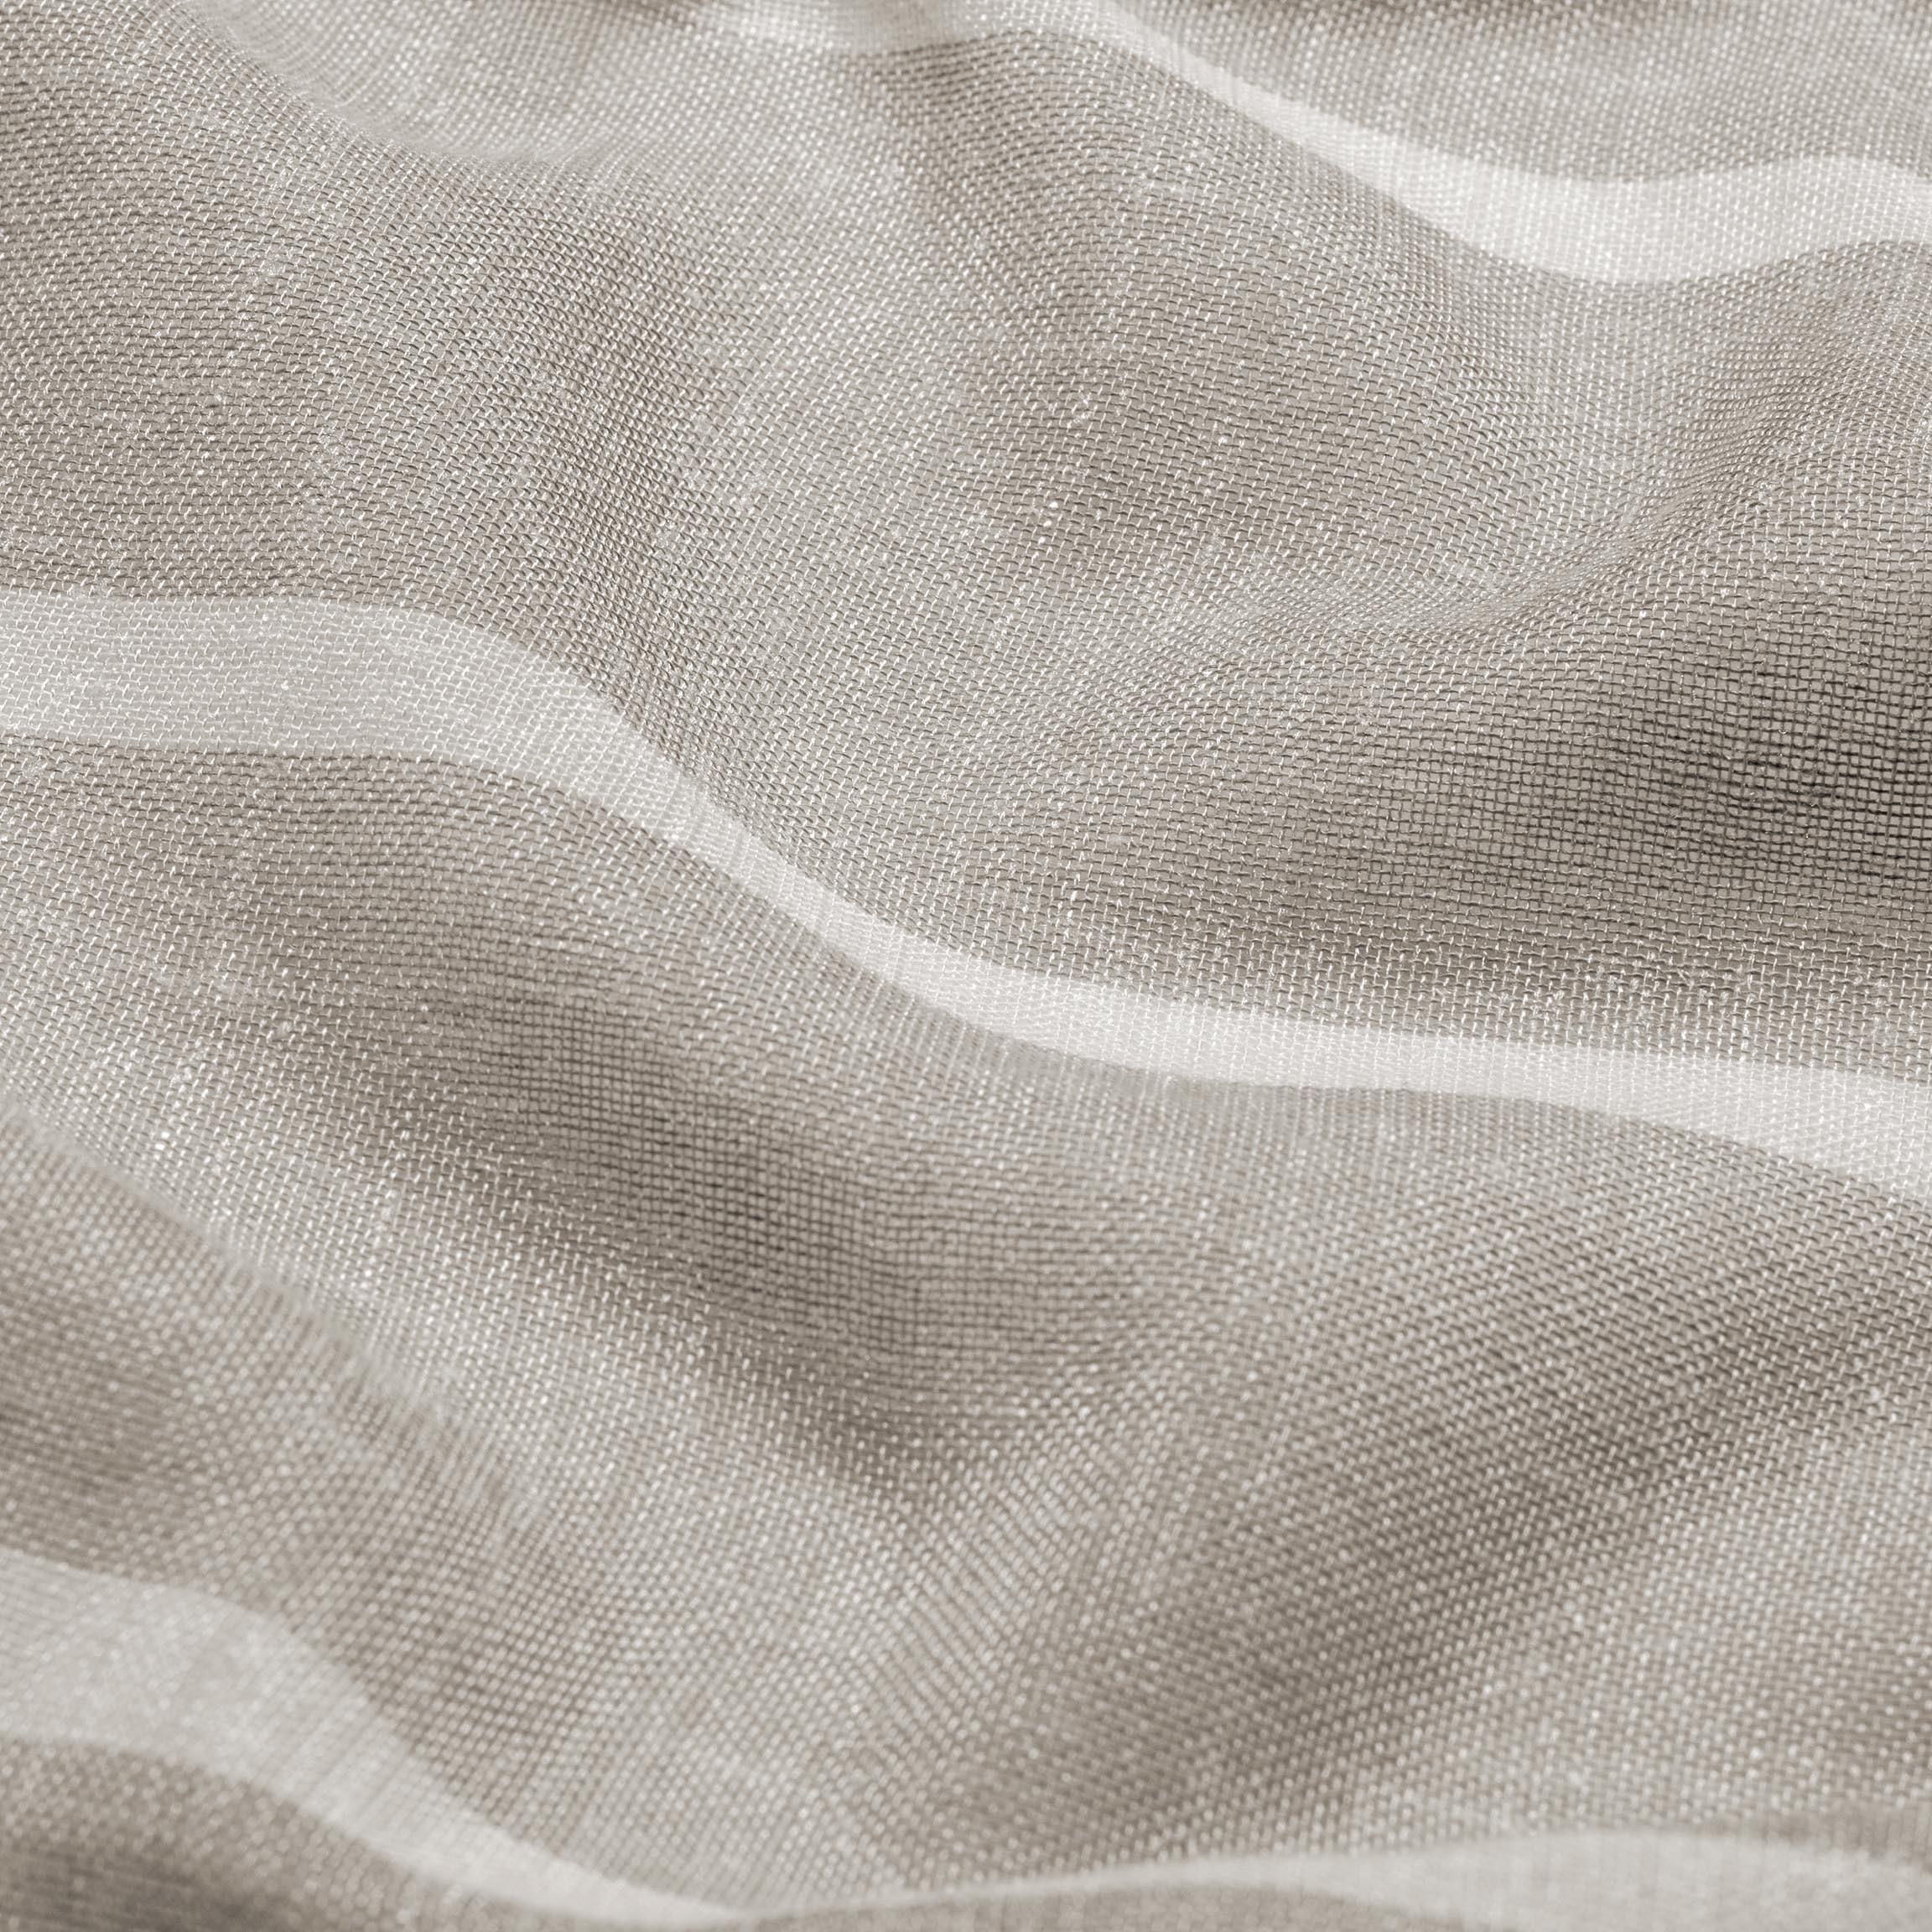  Тюль SOHO BEIGE, ширина 320 см  - Фото